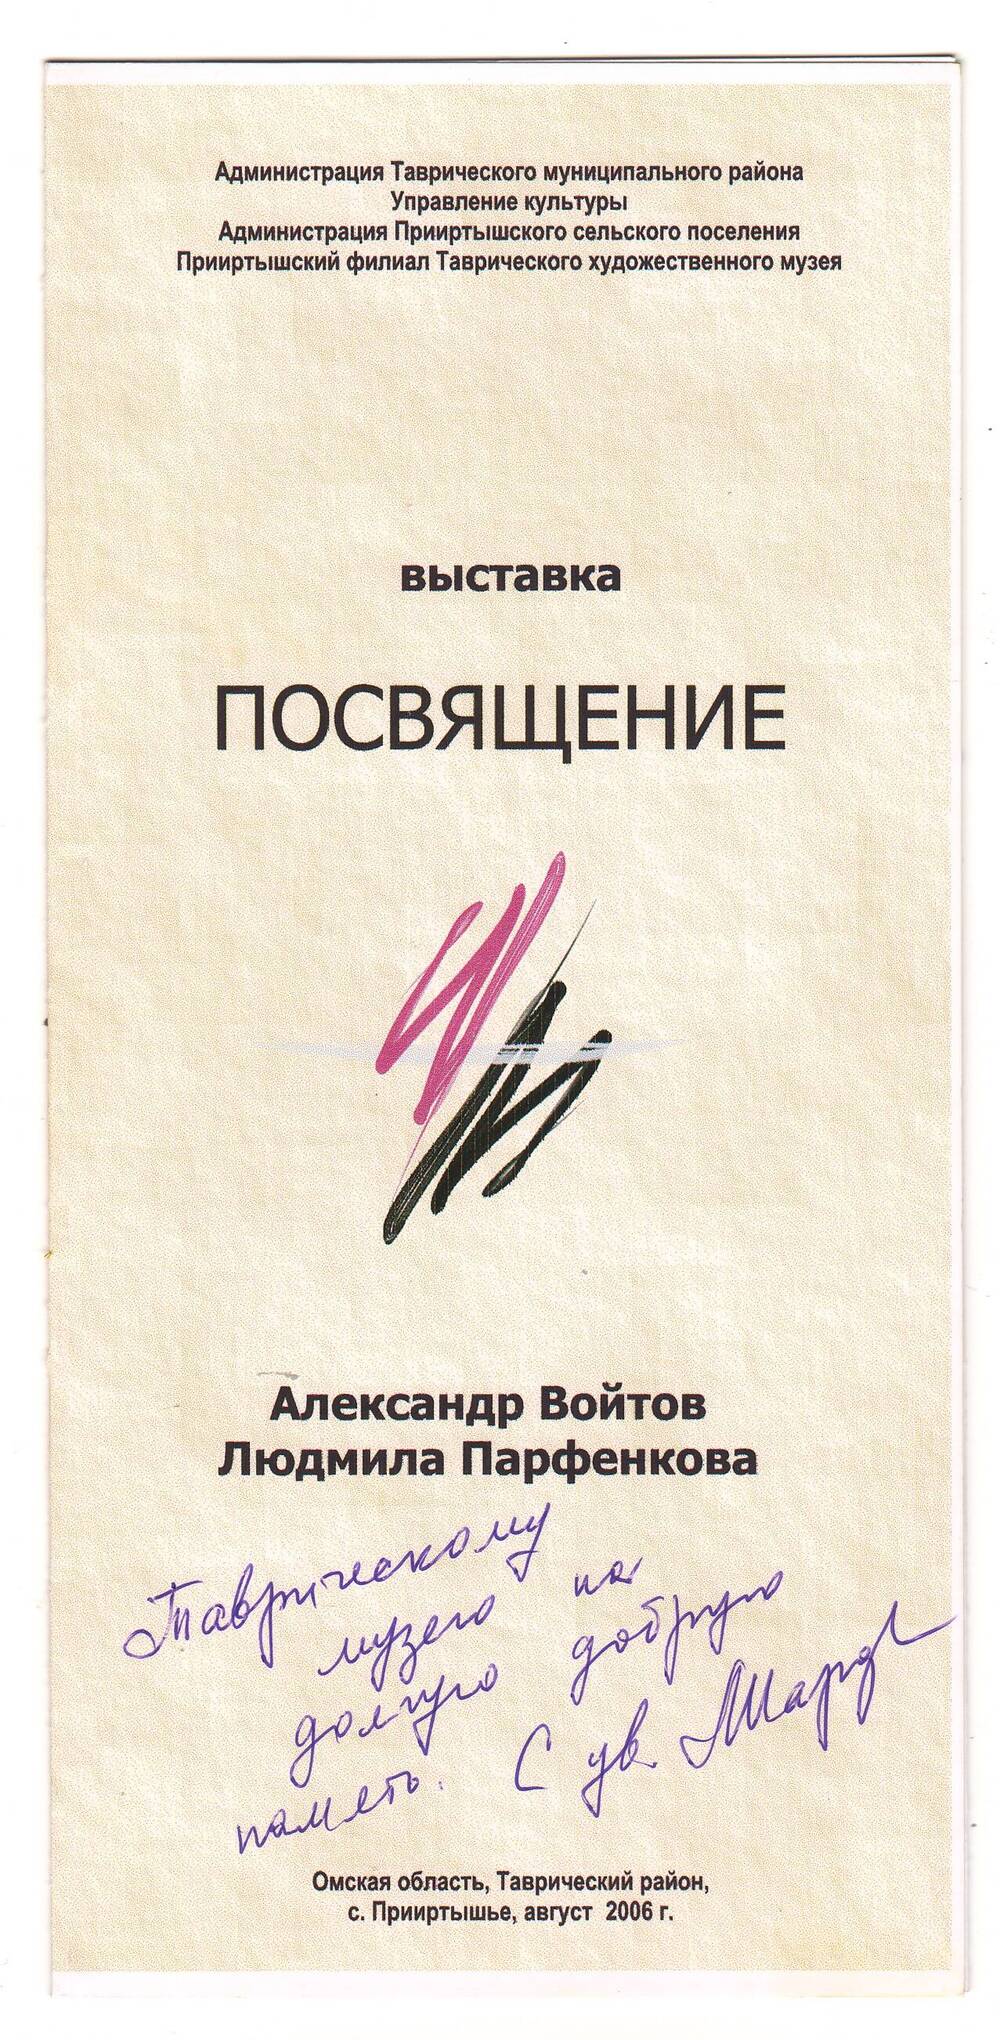 Буклет выставки Посвящение Александра Войтова и Людмилы Парфенковой.